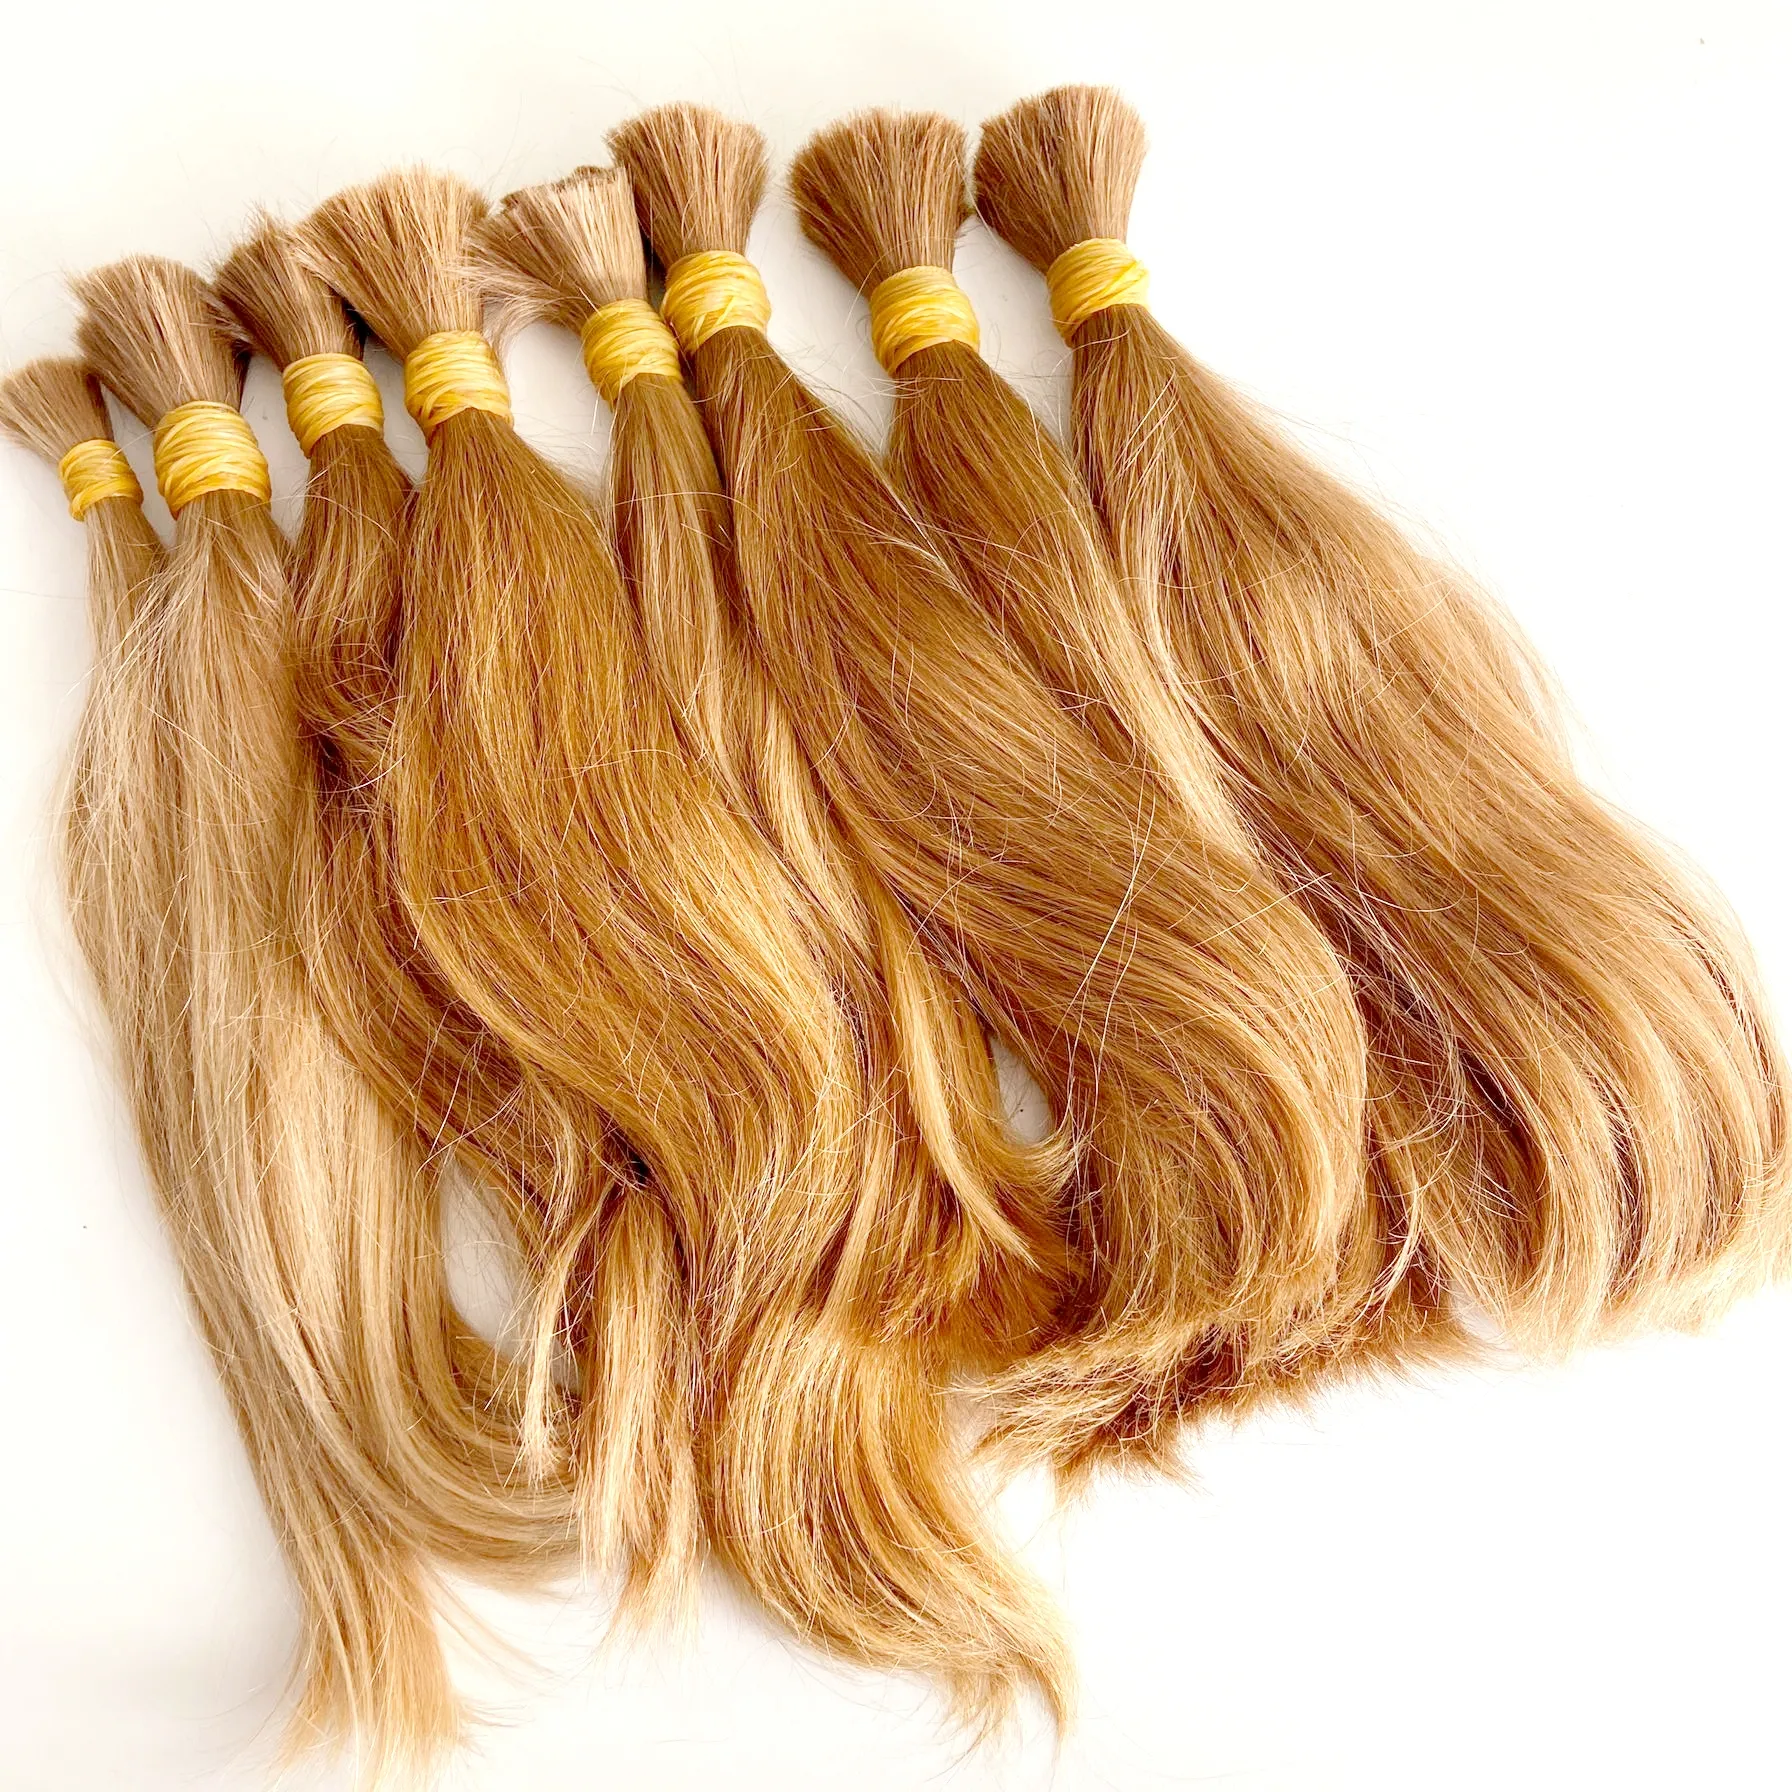 Chưa qua chế biến đôi rút ra Châu Âu Nga Blonde Trinh Nữ tóc con người mở rộng/số lượng lớn